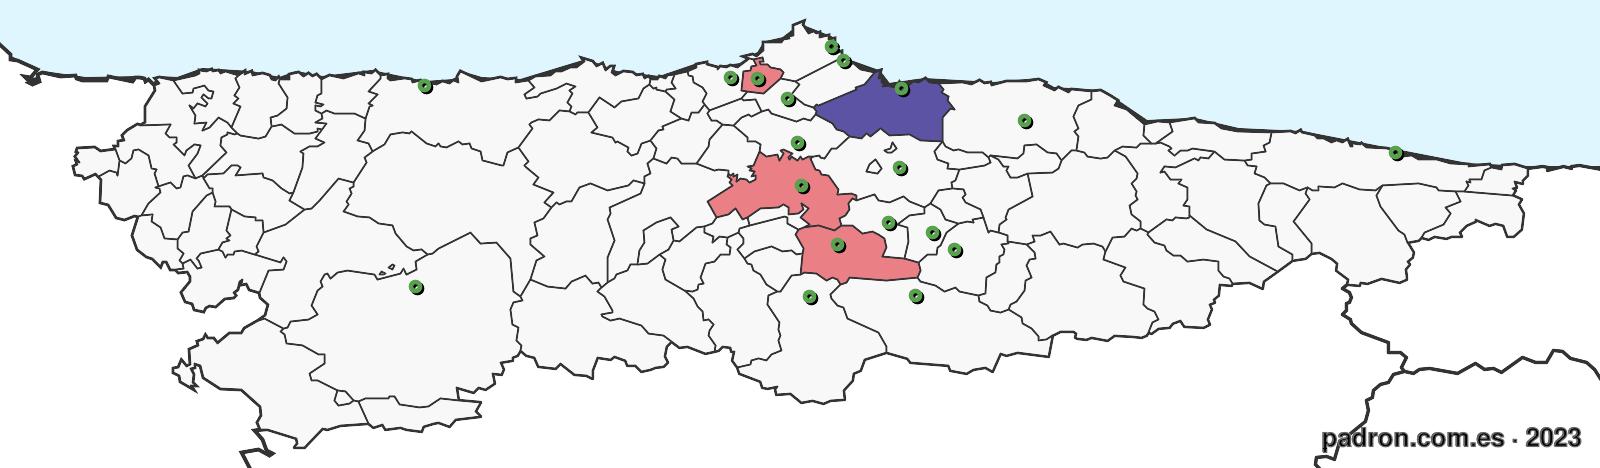 dominiqueses en asturias.